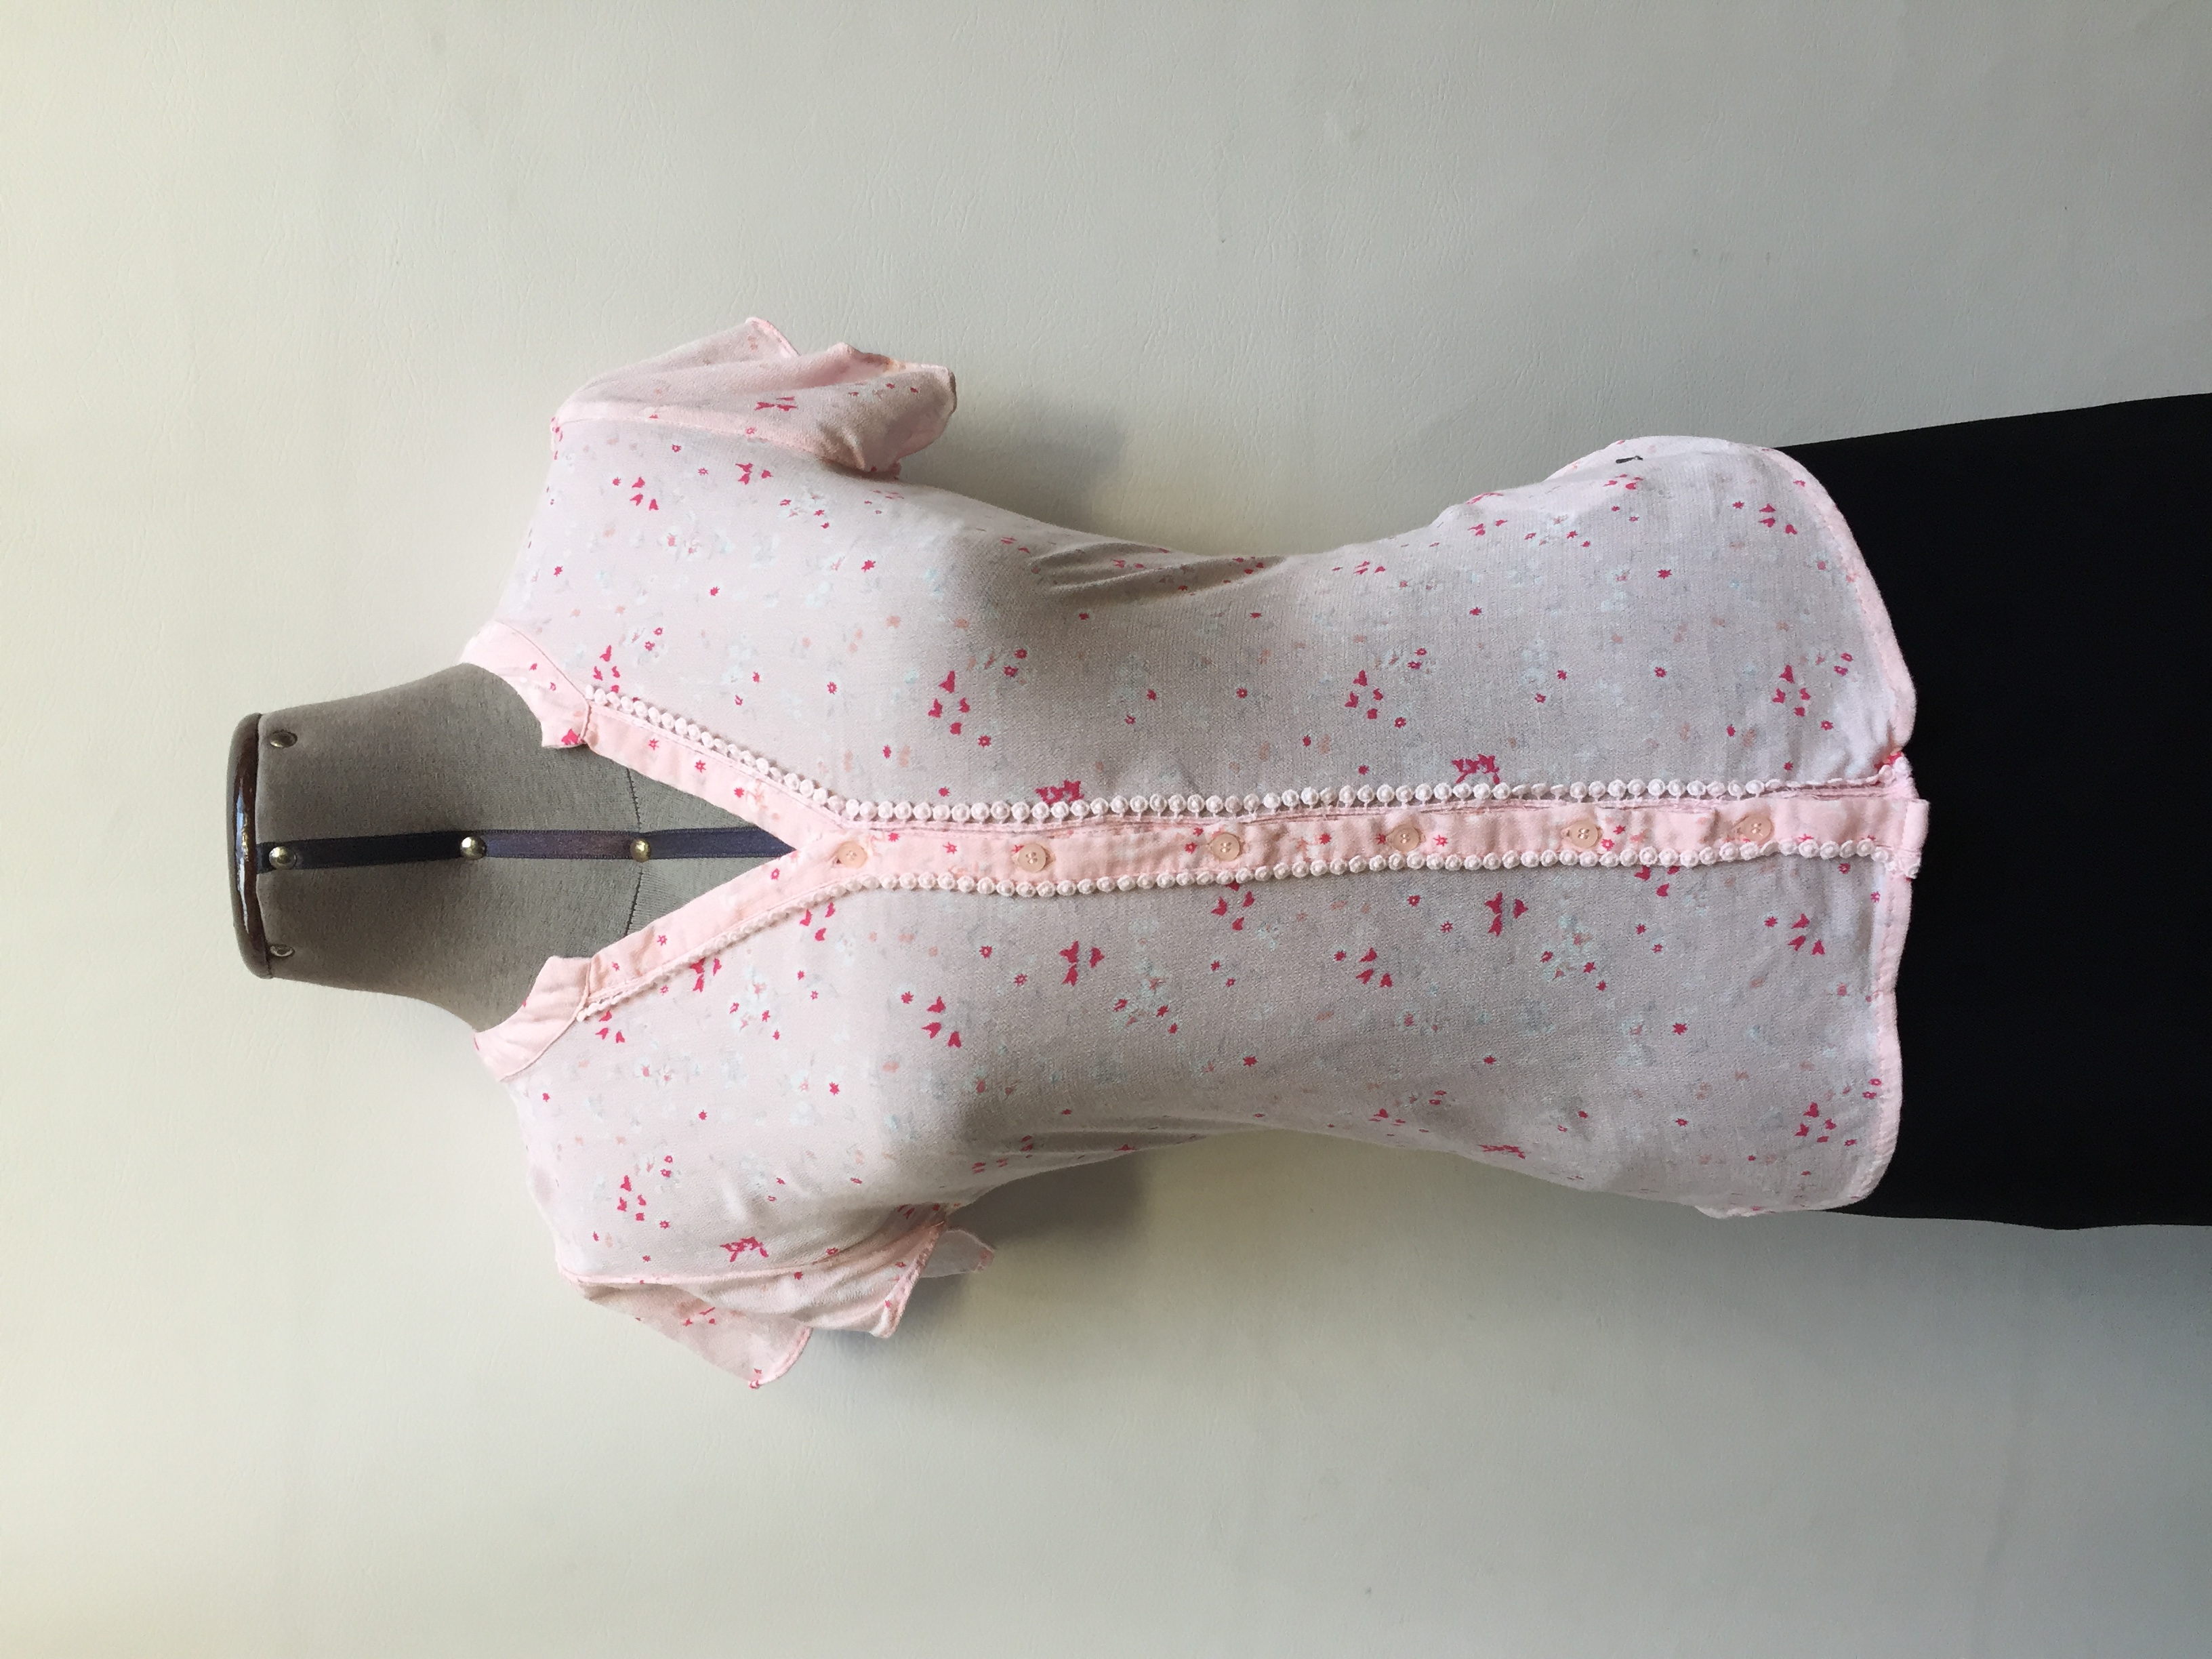 Blusa Aeropostale rosada con estampado de flores blancas y rosadas, escote en V con blondas, botones en el centro y manga corta
Talla S